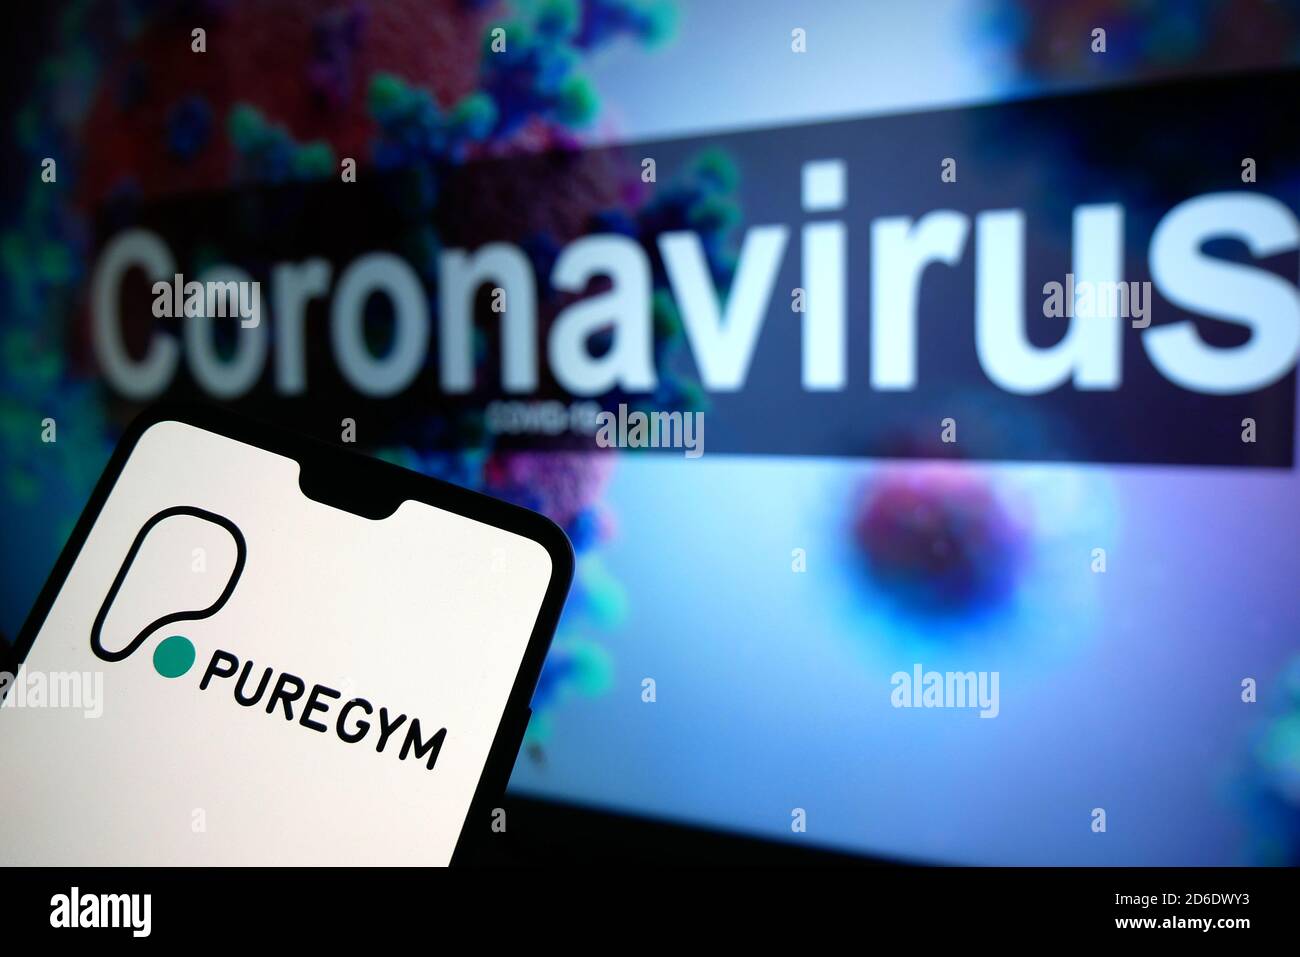 Il logo PureGym visualizzato su un telefono cellulare con un modello illustrativo del Coronavirus visualizzato su un monitor sullo sfondo. Foto Stock